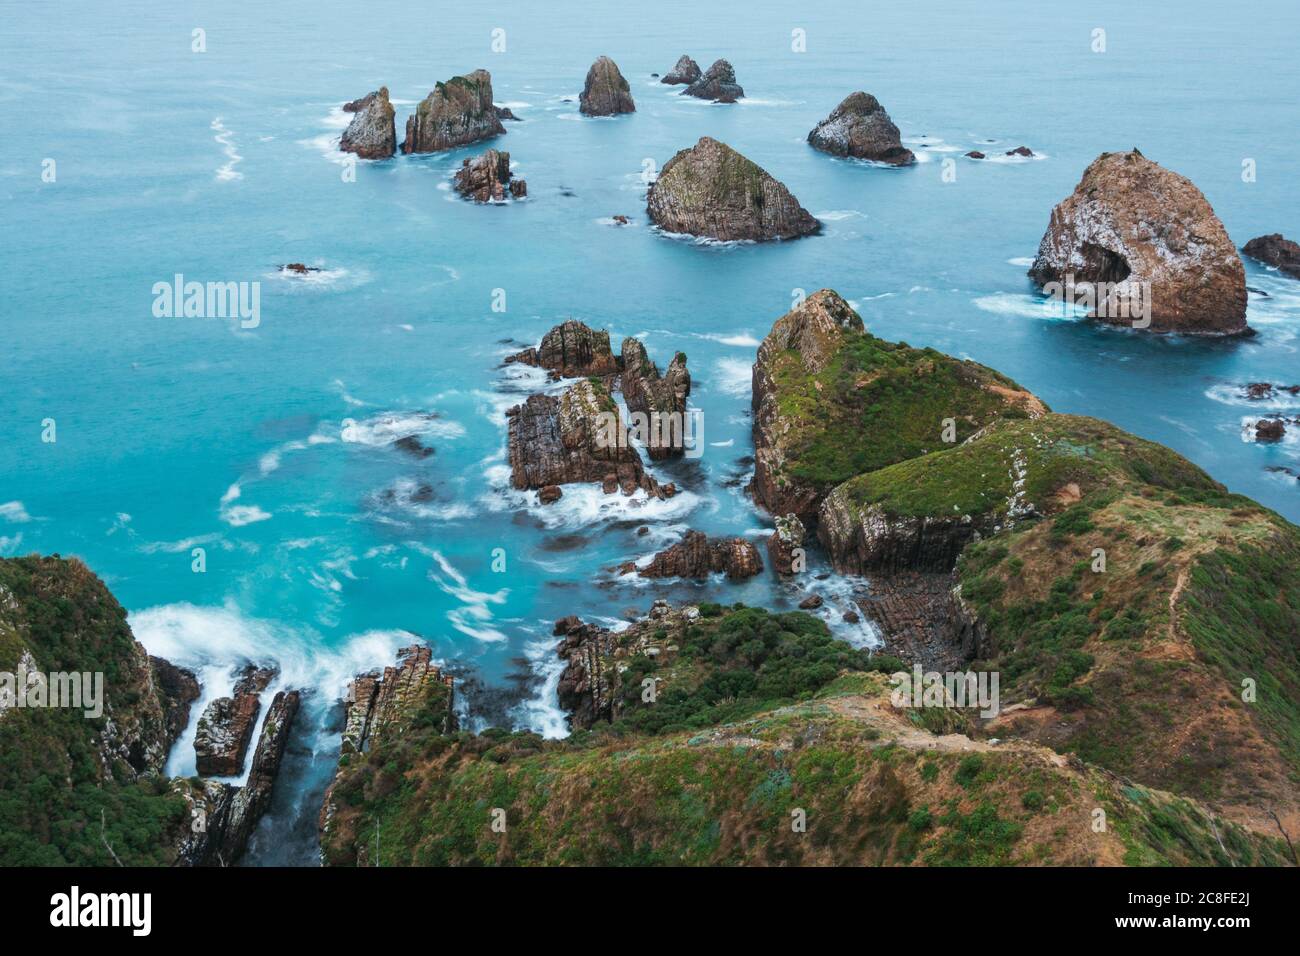 Les vagues se cassent doucement contre une grande forme de roche à Nugget point / Tokata, Catlins Coast, Nouvelle-Zélande Banque D'Images